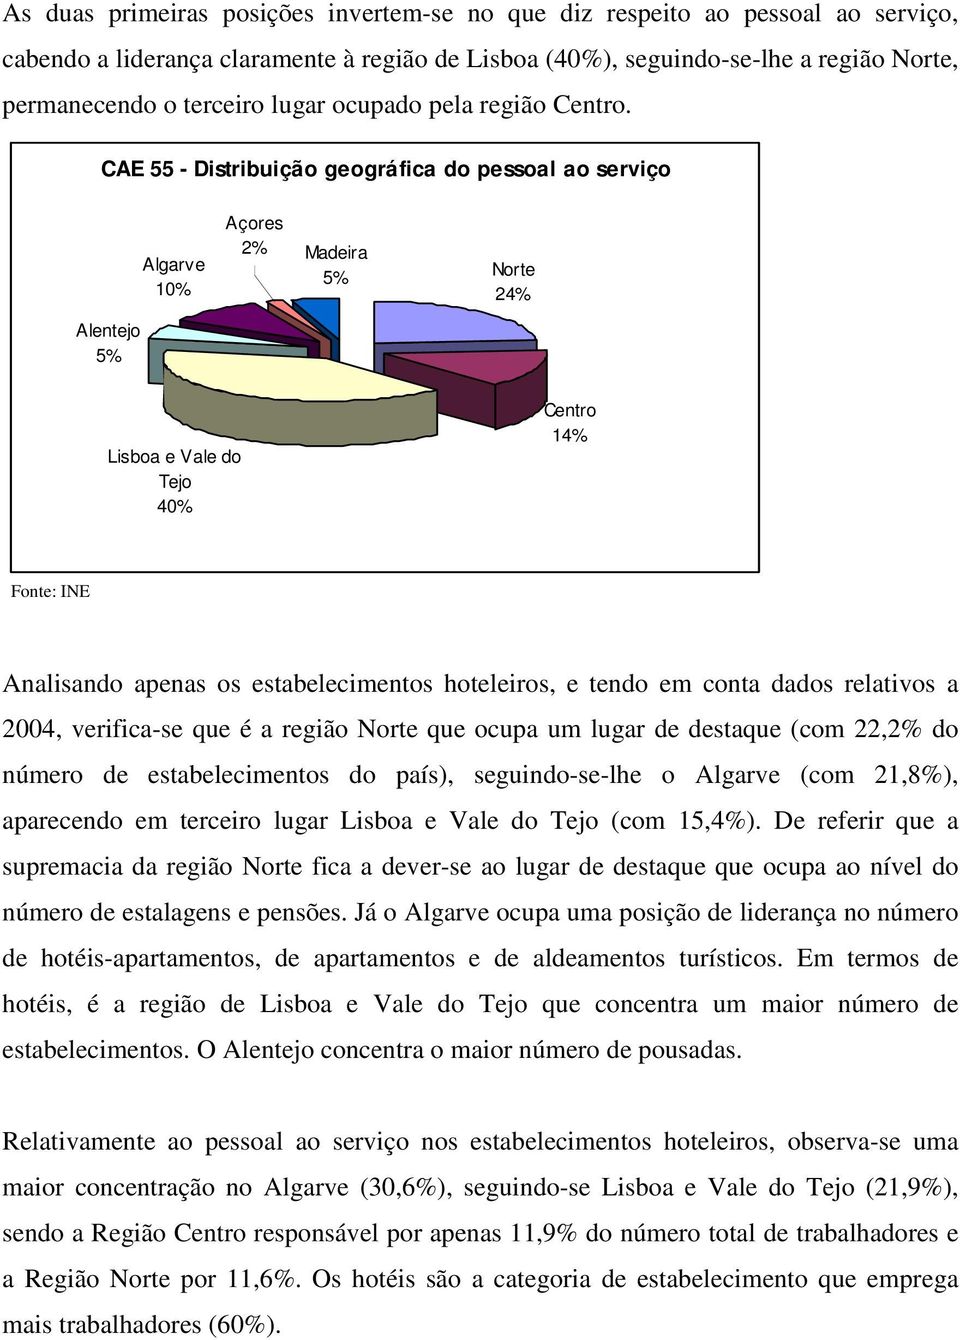 CAE 55 - Distribuição geográfica do pessoal ao serviço Algarve 10% Açores 2% Madeira 5% Norte 24% Alentejo 5% Lisboa e Vale do Tejo 40% Centro 14% Analisando apenas os estabelecimentos hoteleiros, e